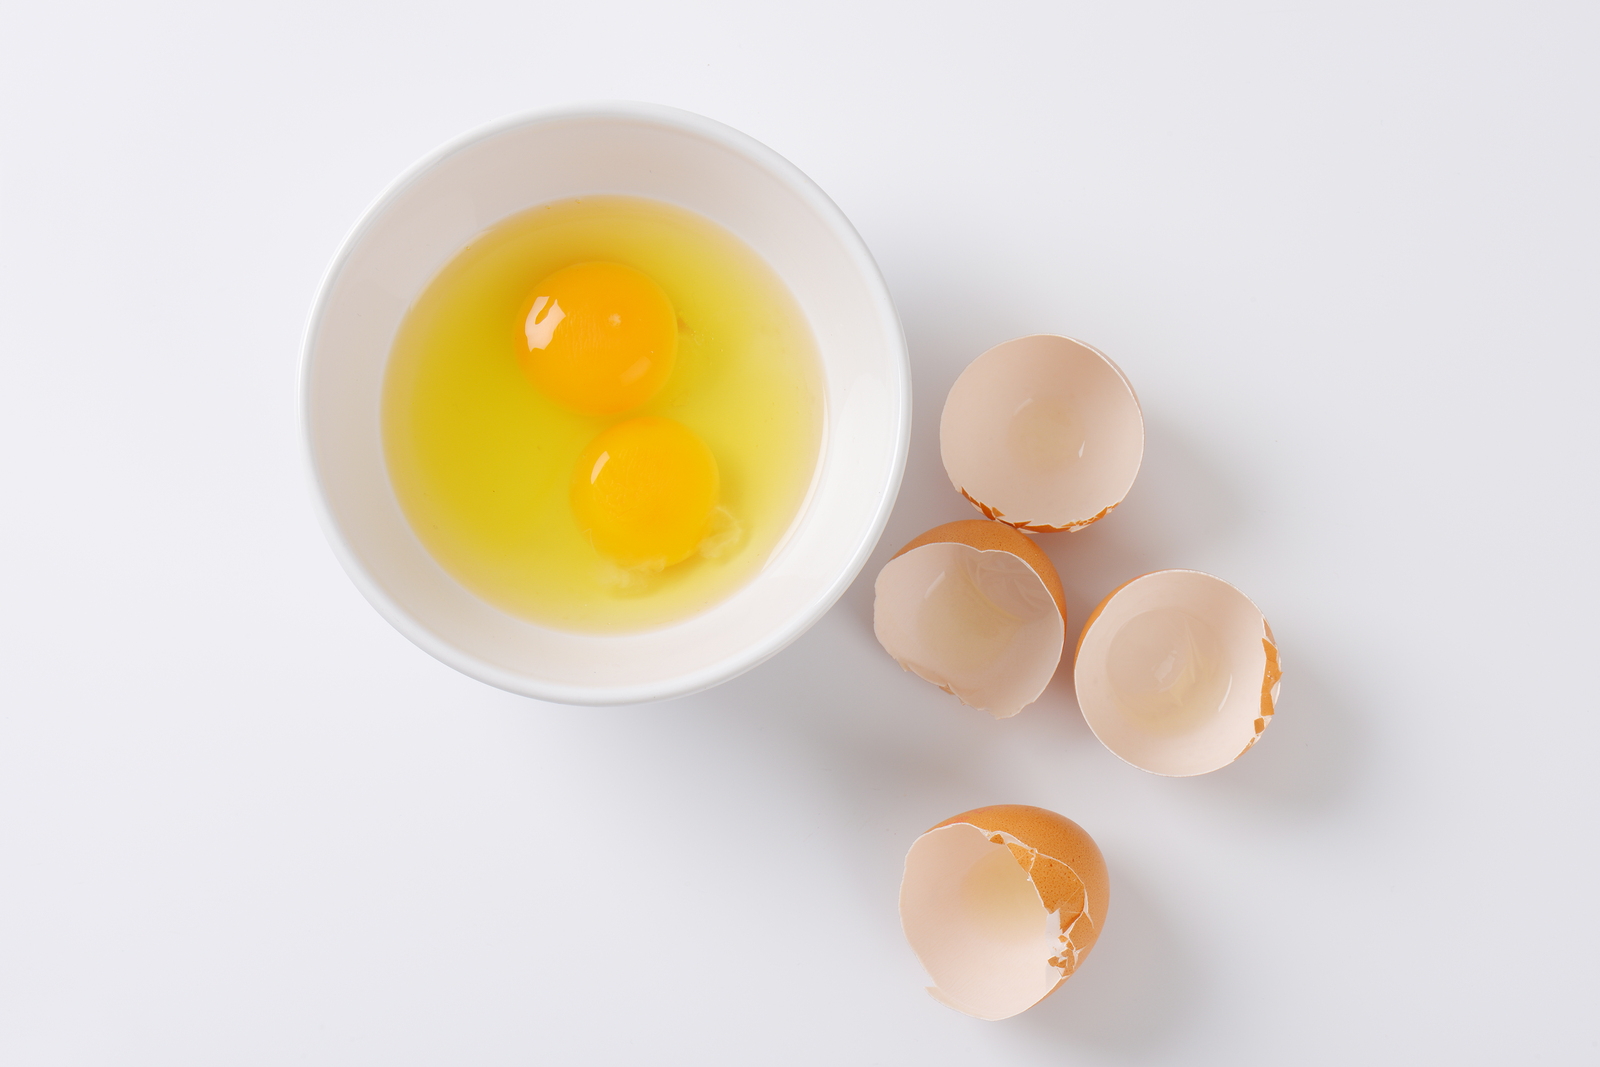 Anak ayam tumbuh di dalam telur selama 21 hari sebelum menetas. cadangan makanan anak ayam sebelum menetas adalah